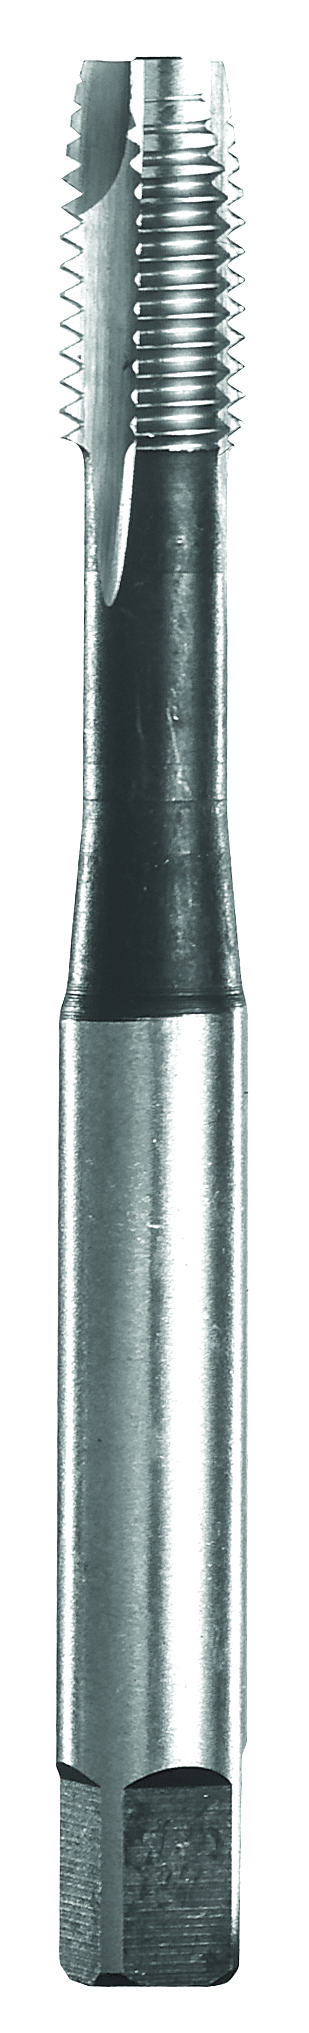 193 Taraud entrée Gun 3 x 50 mm - Demi long - HSS-Co 5% - Pas métrique - Queue renforcée 